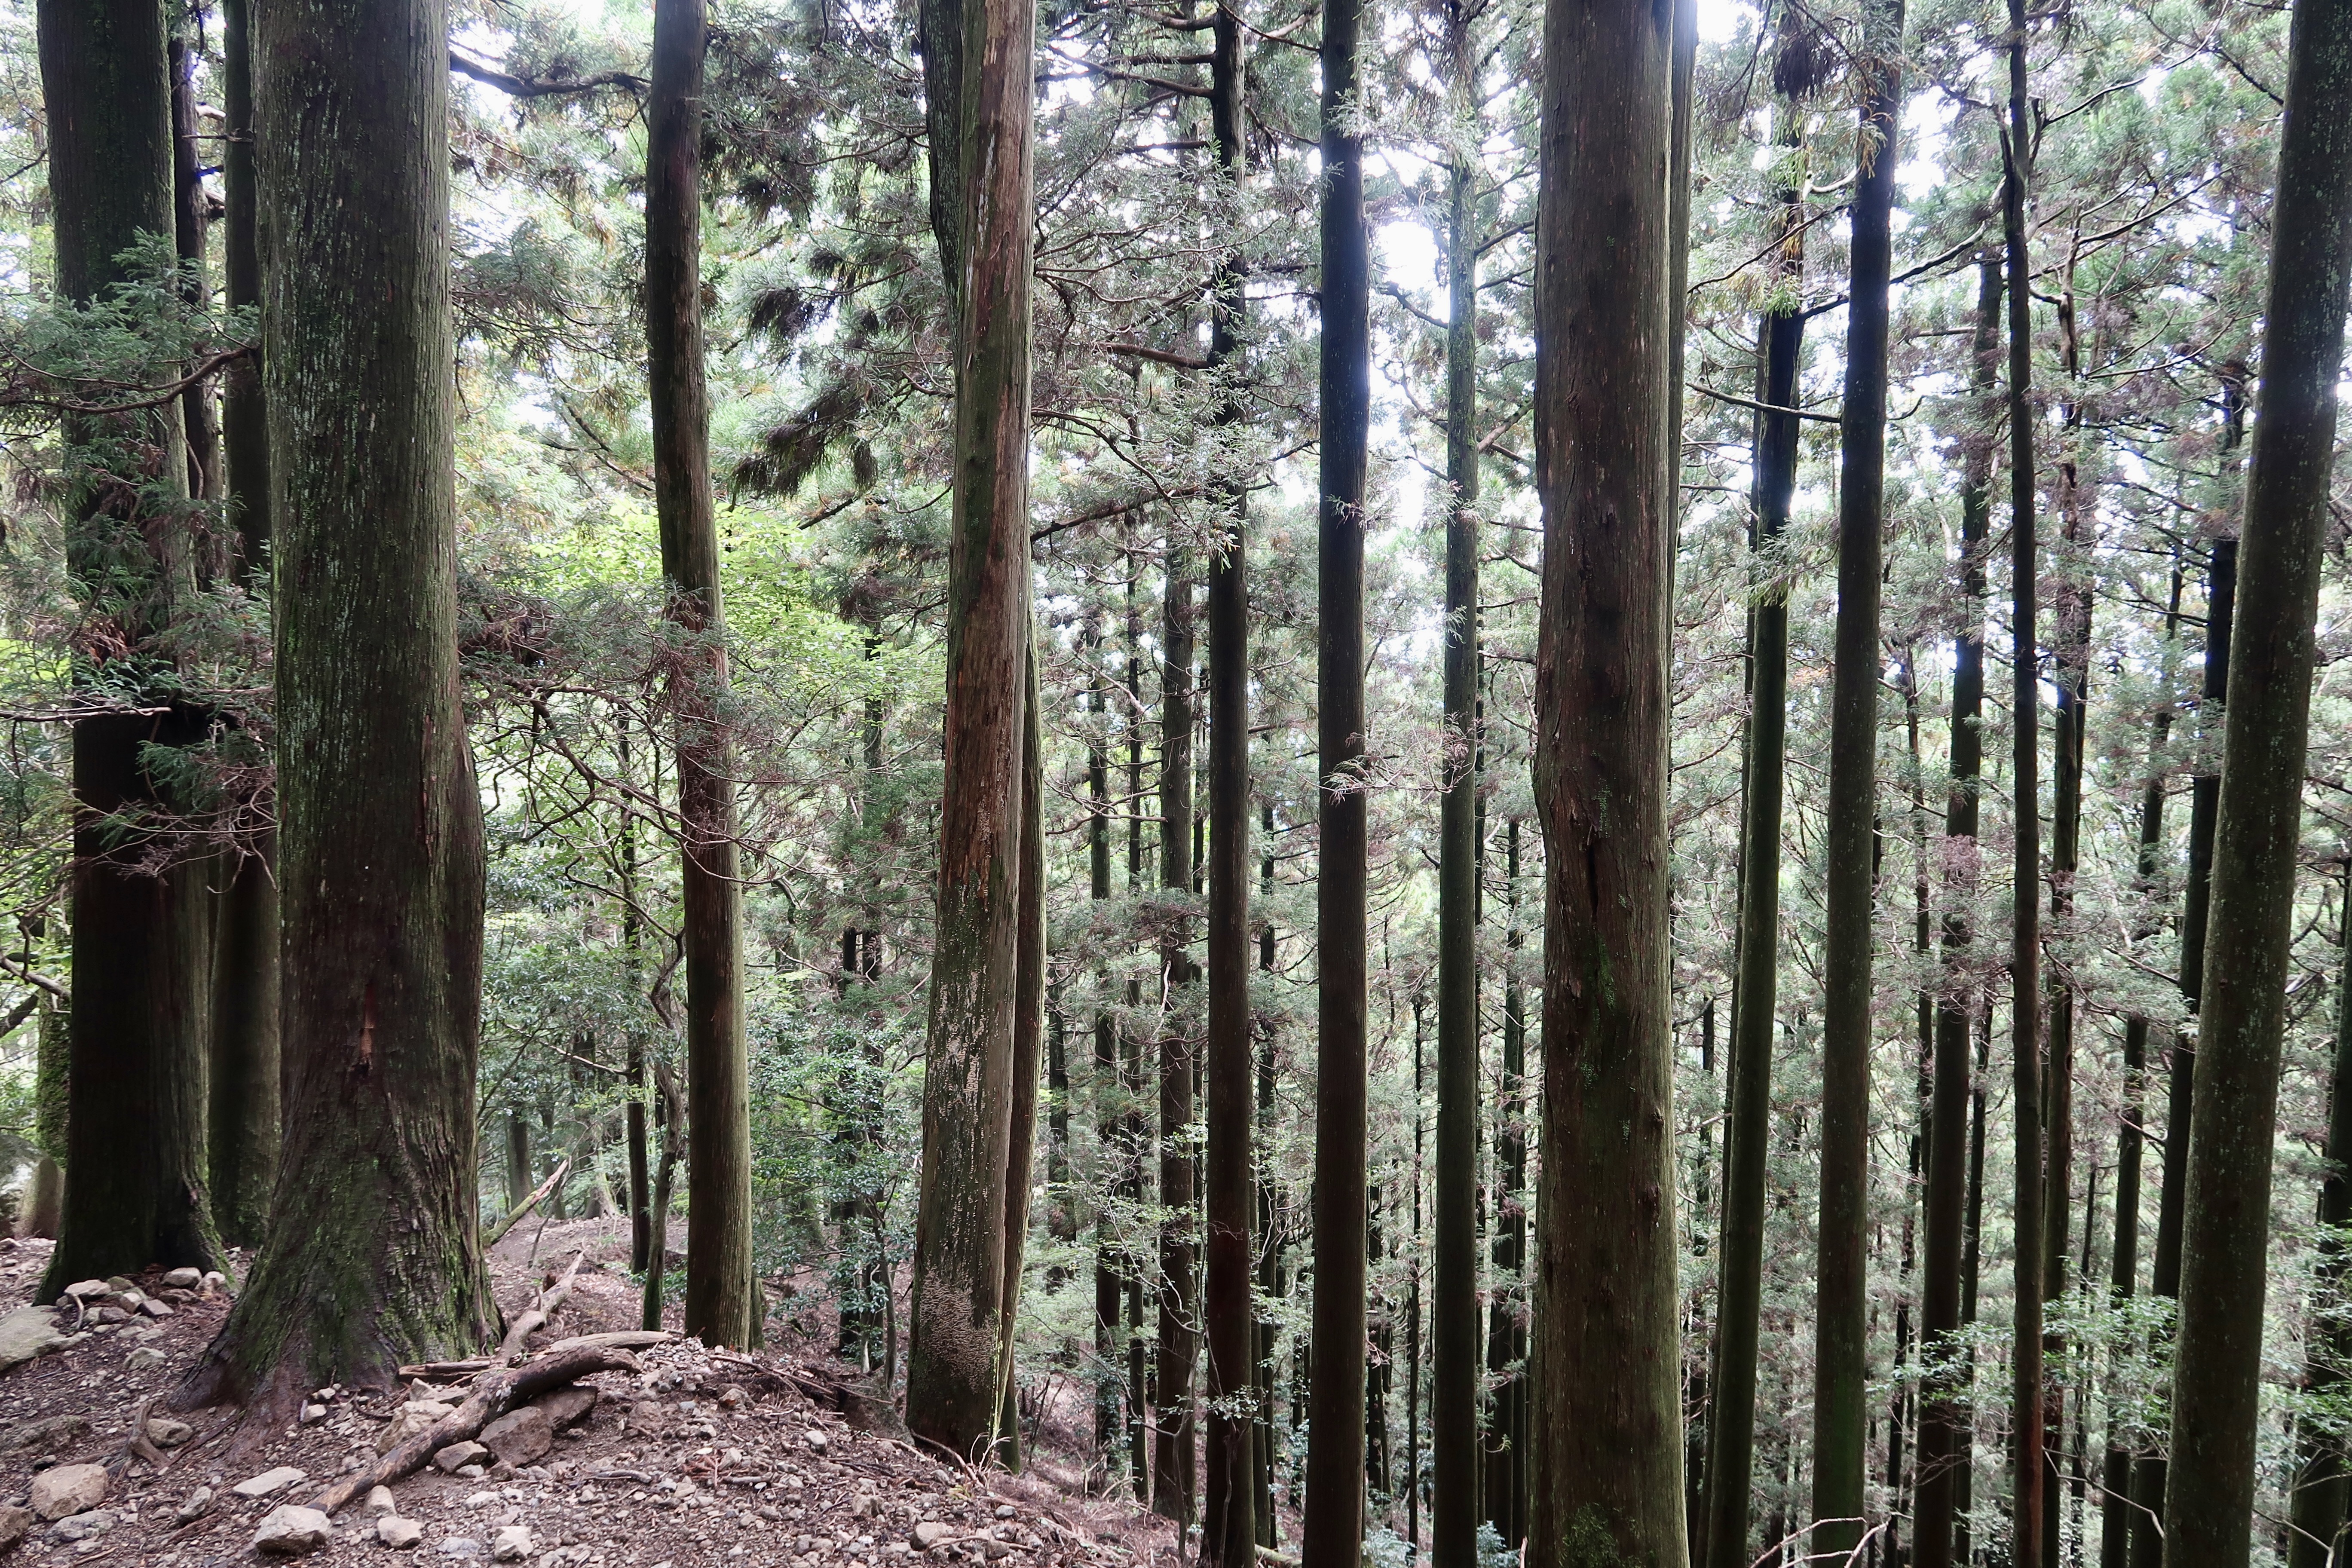 ภายในป่าส่วนใหญ่เป็นต้นซีดาร์เป็นหลัก